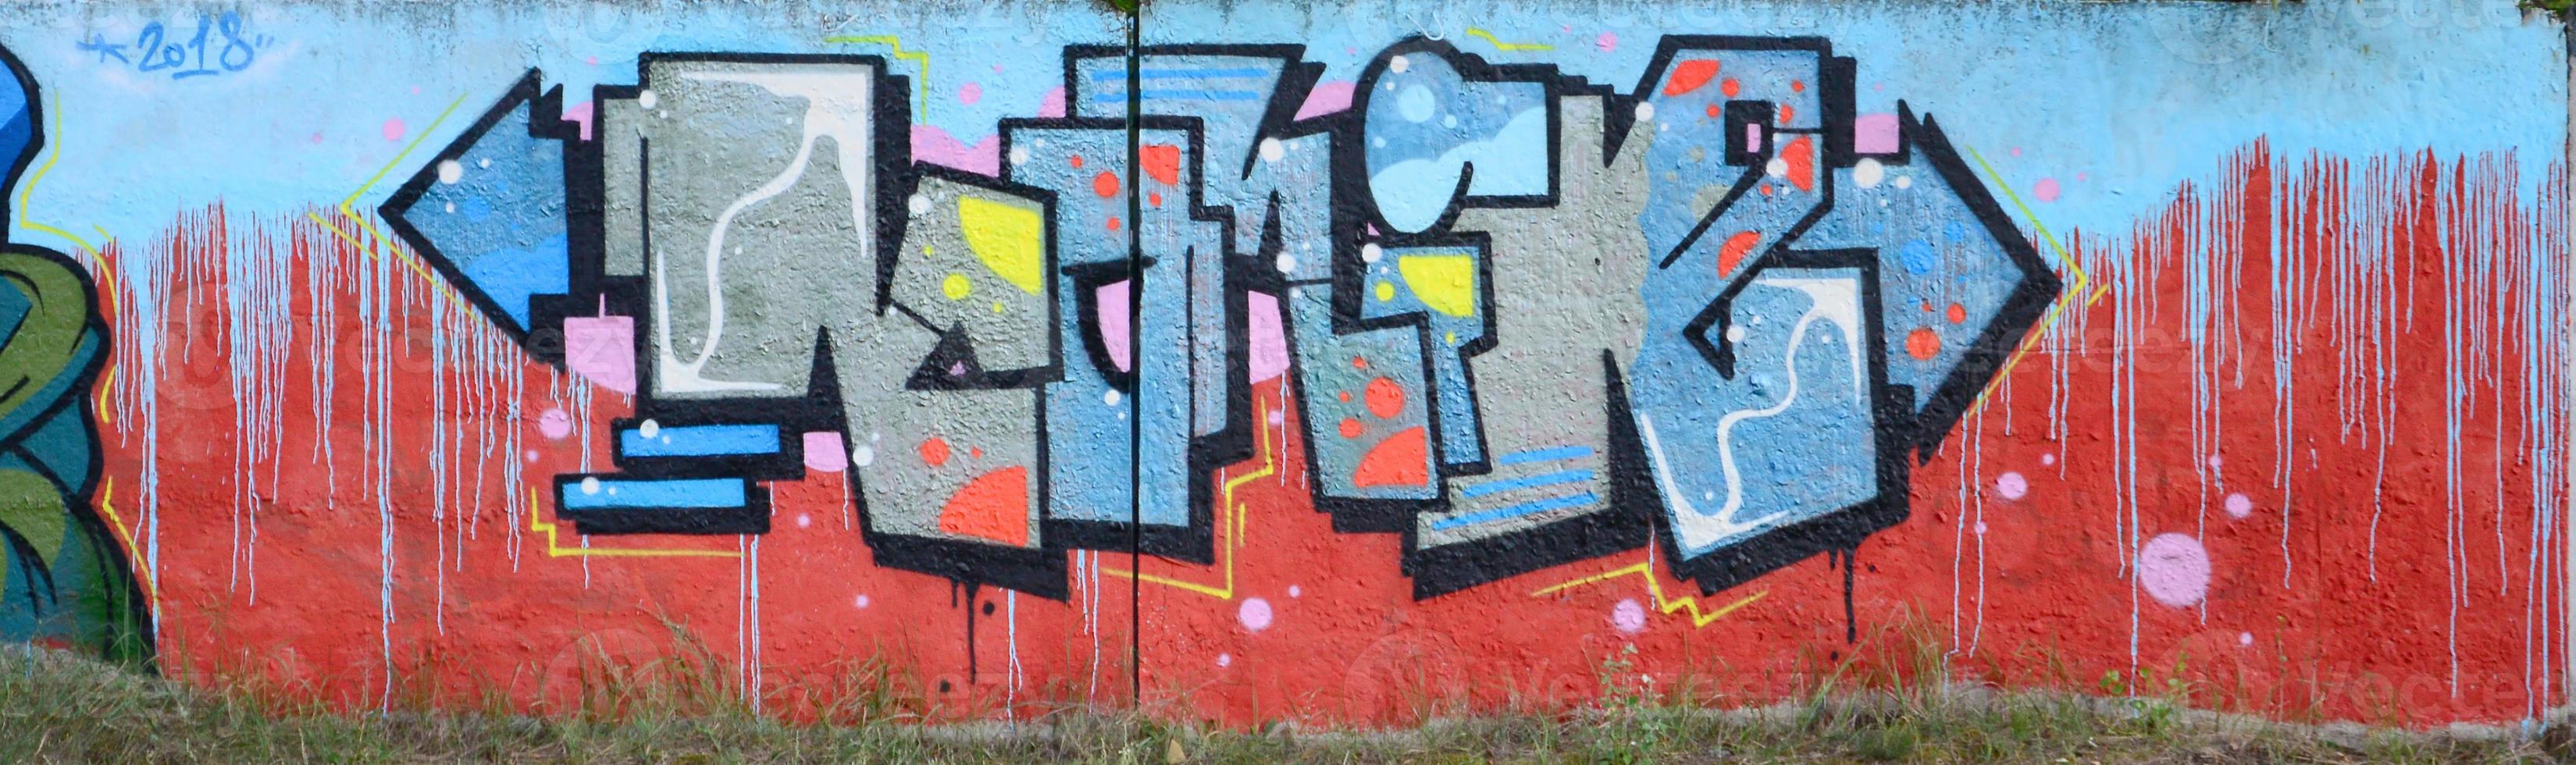 oeuvre de graffiti complète et accomplie. le vieux mur décoré de taches de peinture dans le style de la culture de l'art de la rue. texture de fond coloré photo